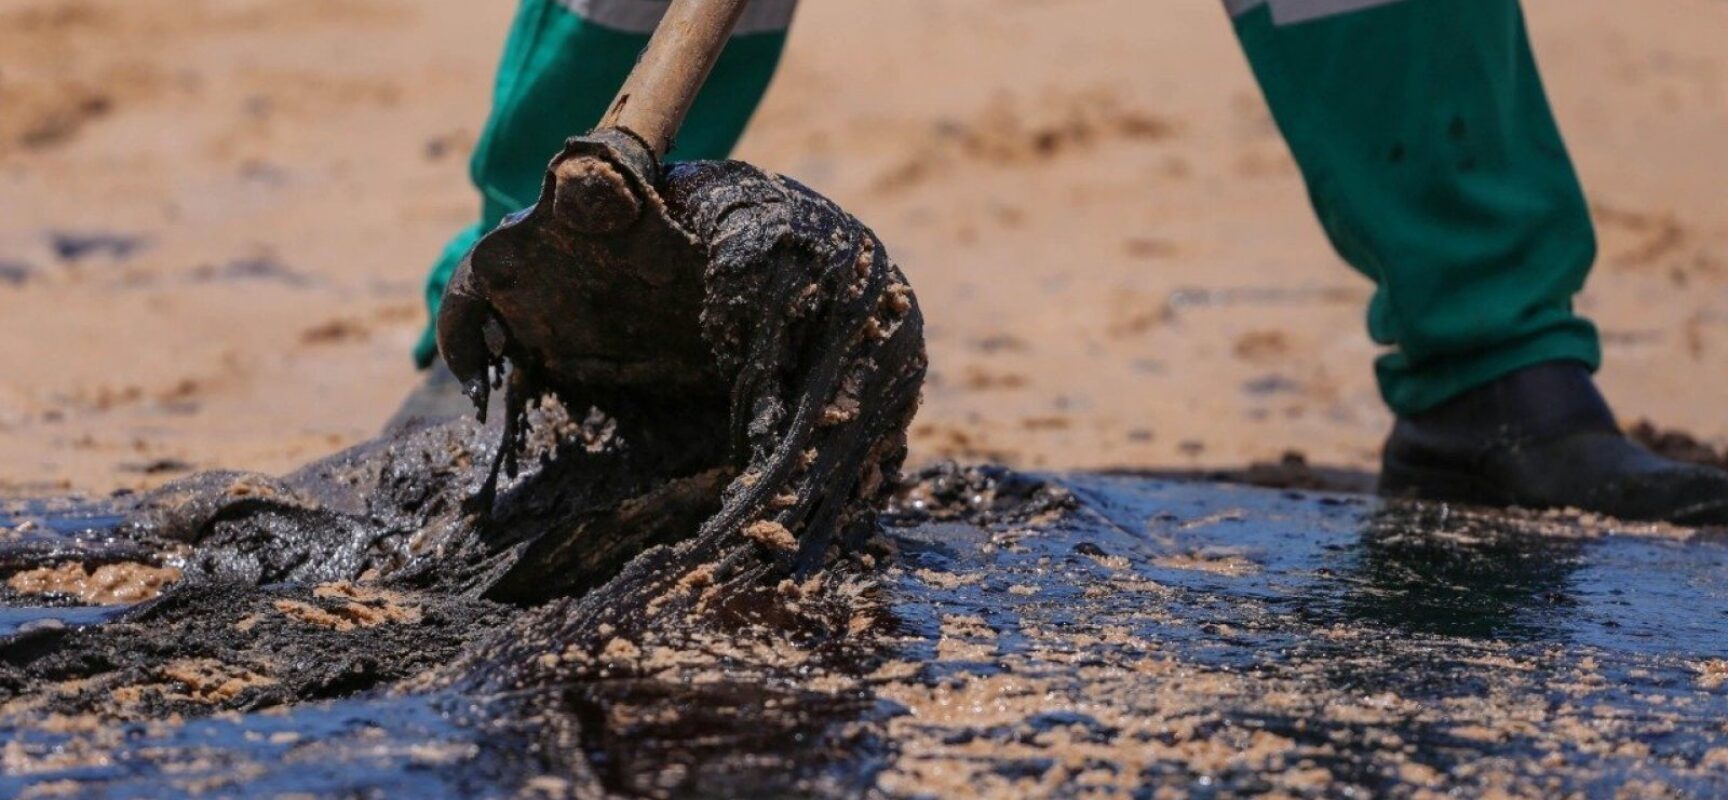 Derramamento de óleo na costa do Nordeste completa 2 anos sem responsabilização de culpados